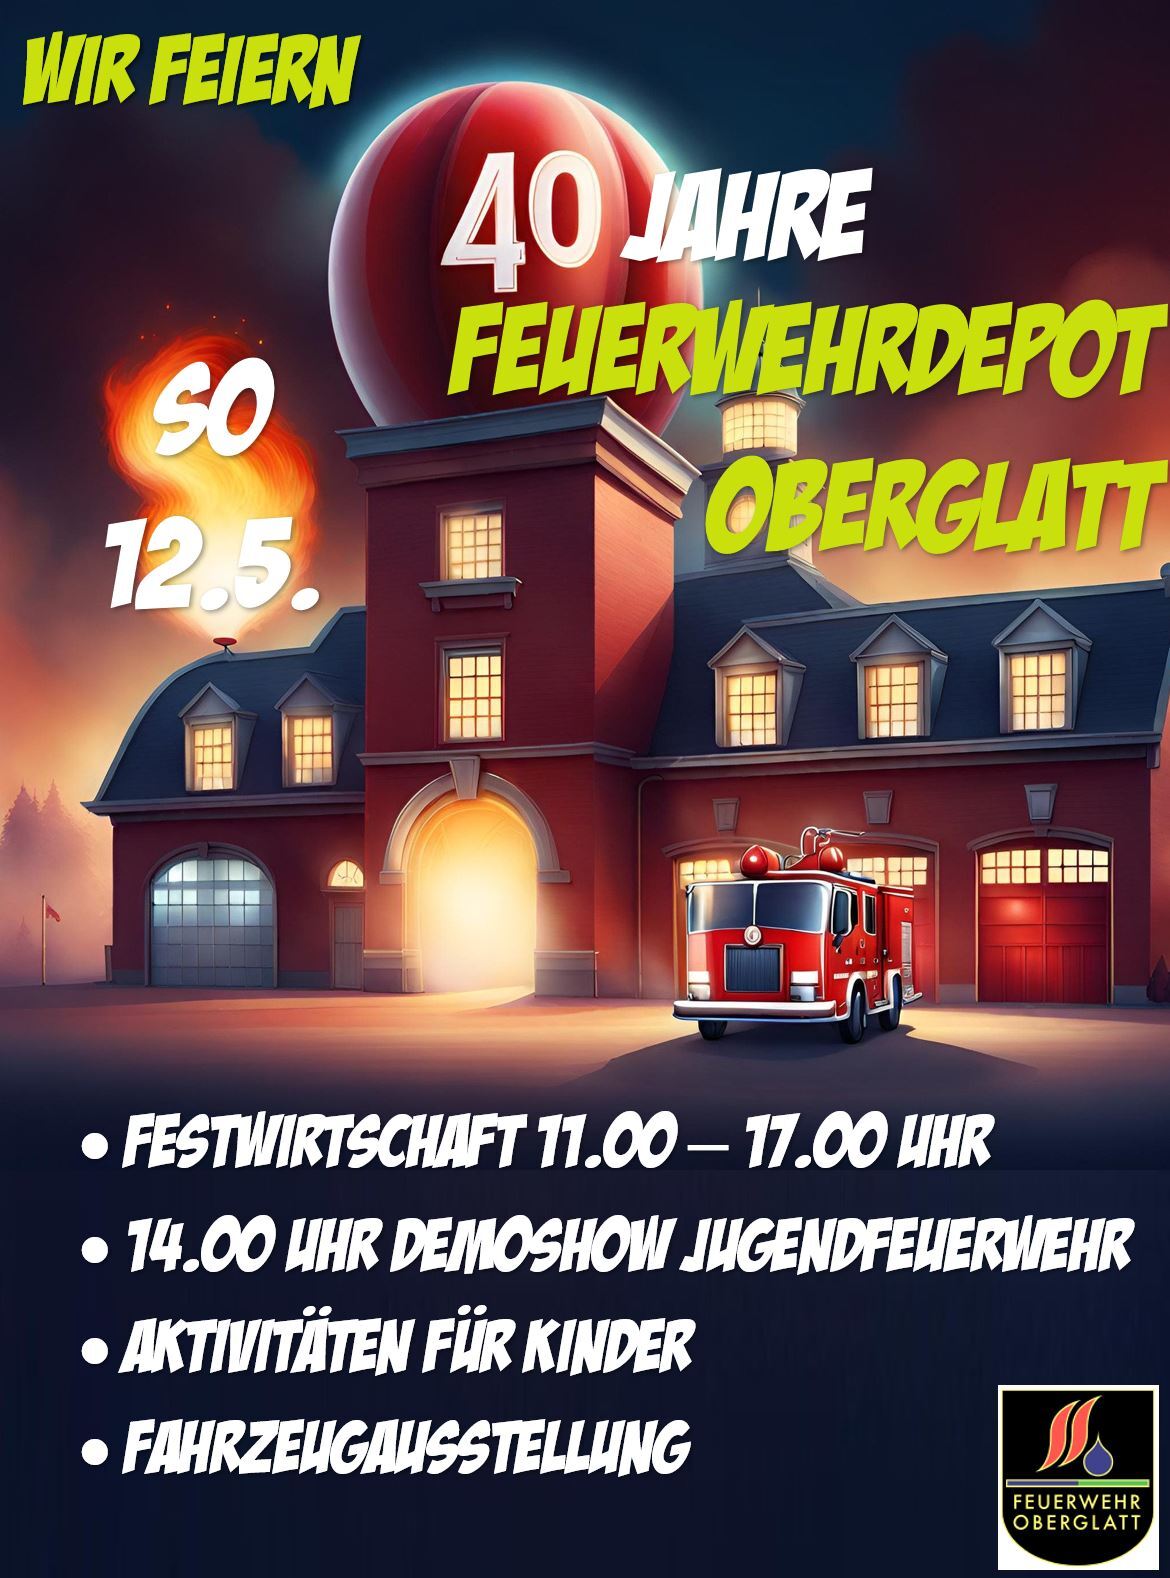 Flyer 40 Jahre Feuerwehrdepot Oberglatt am Sonntag, 12.5.2024 von 11 bis 17 Uhr